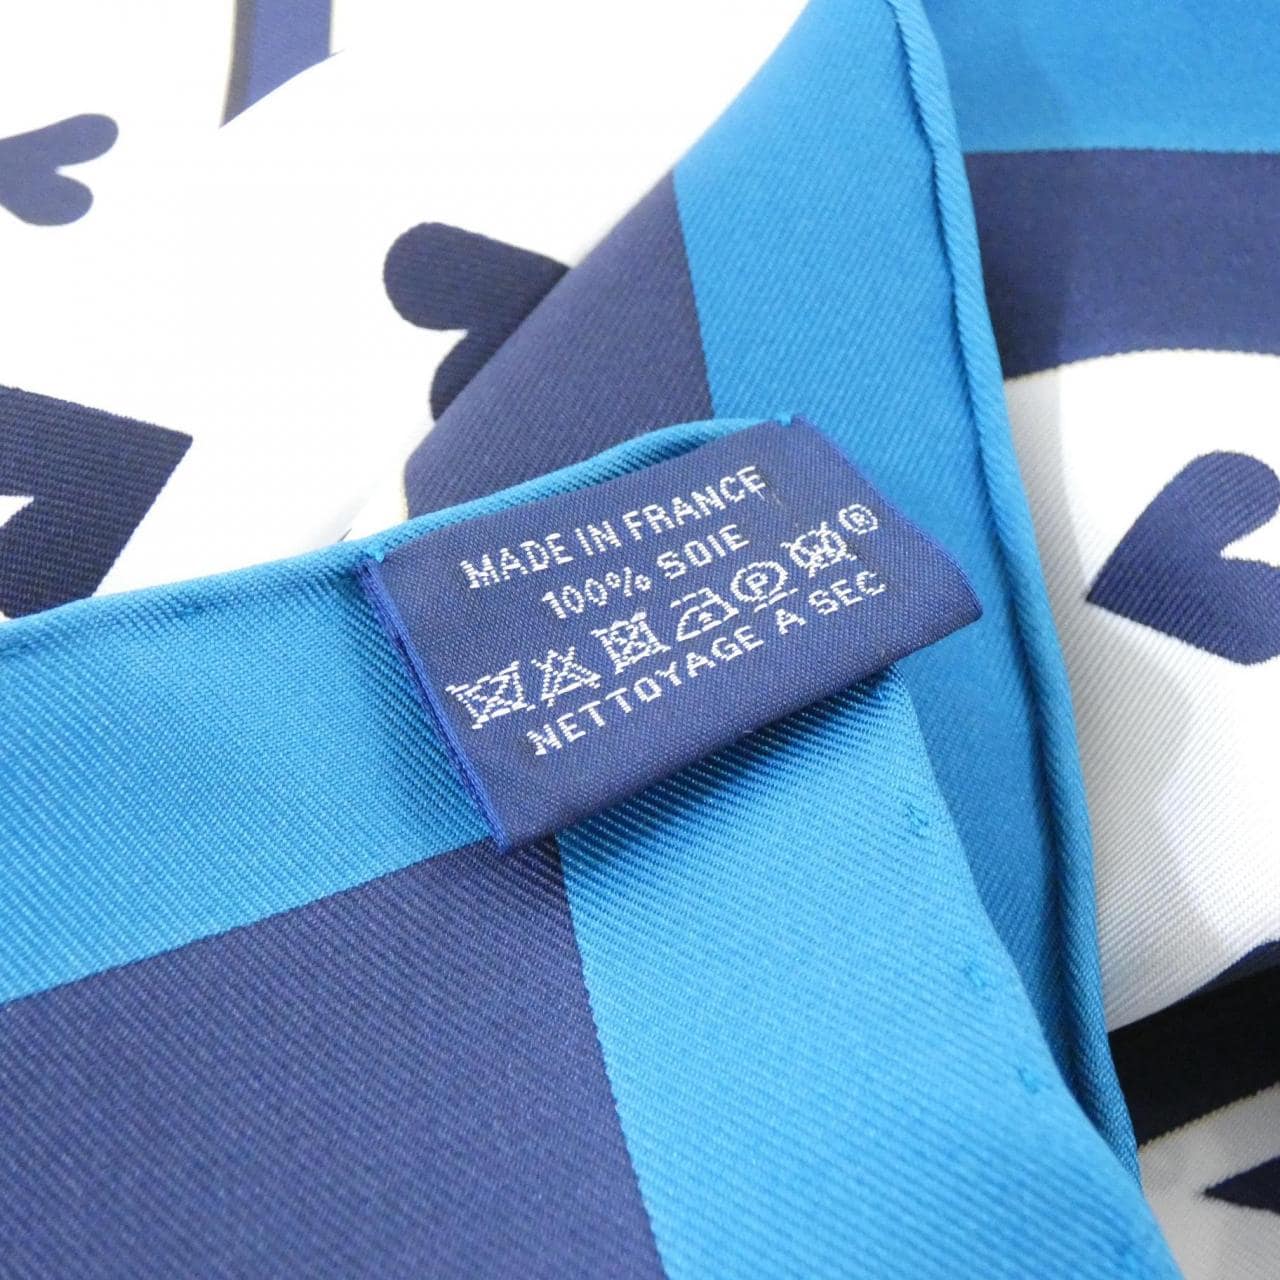 エルメス JEU DE CARTES カレ 003169S スカーフ